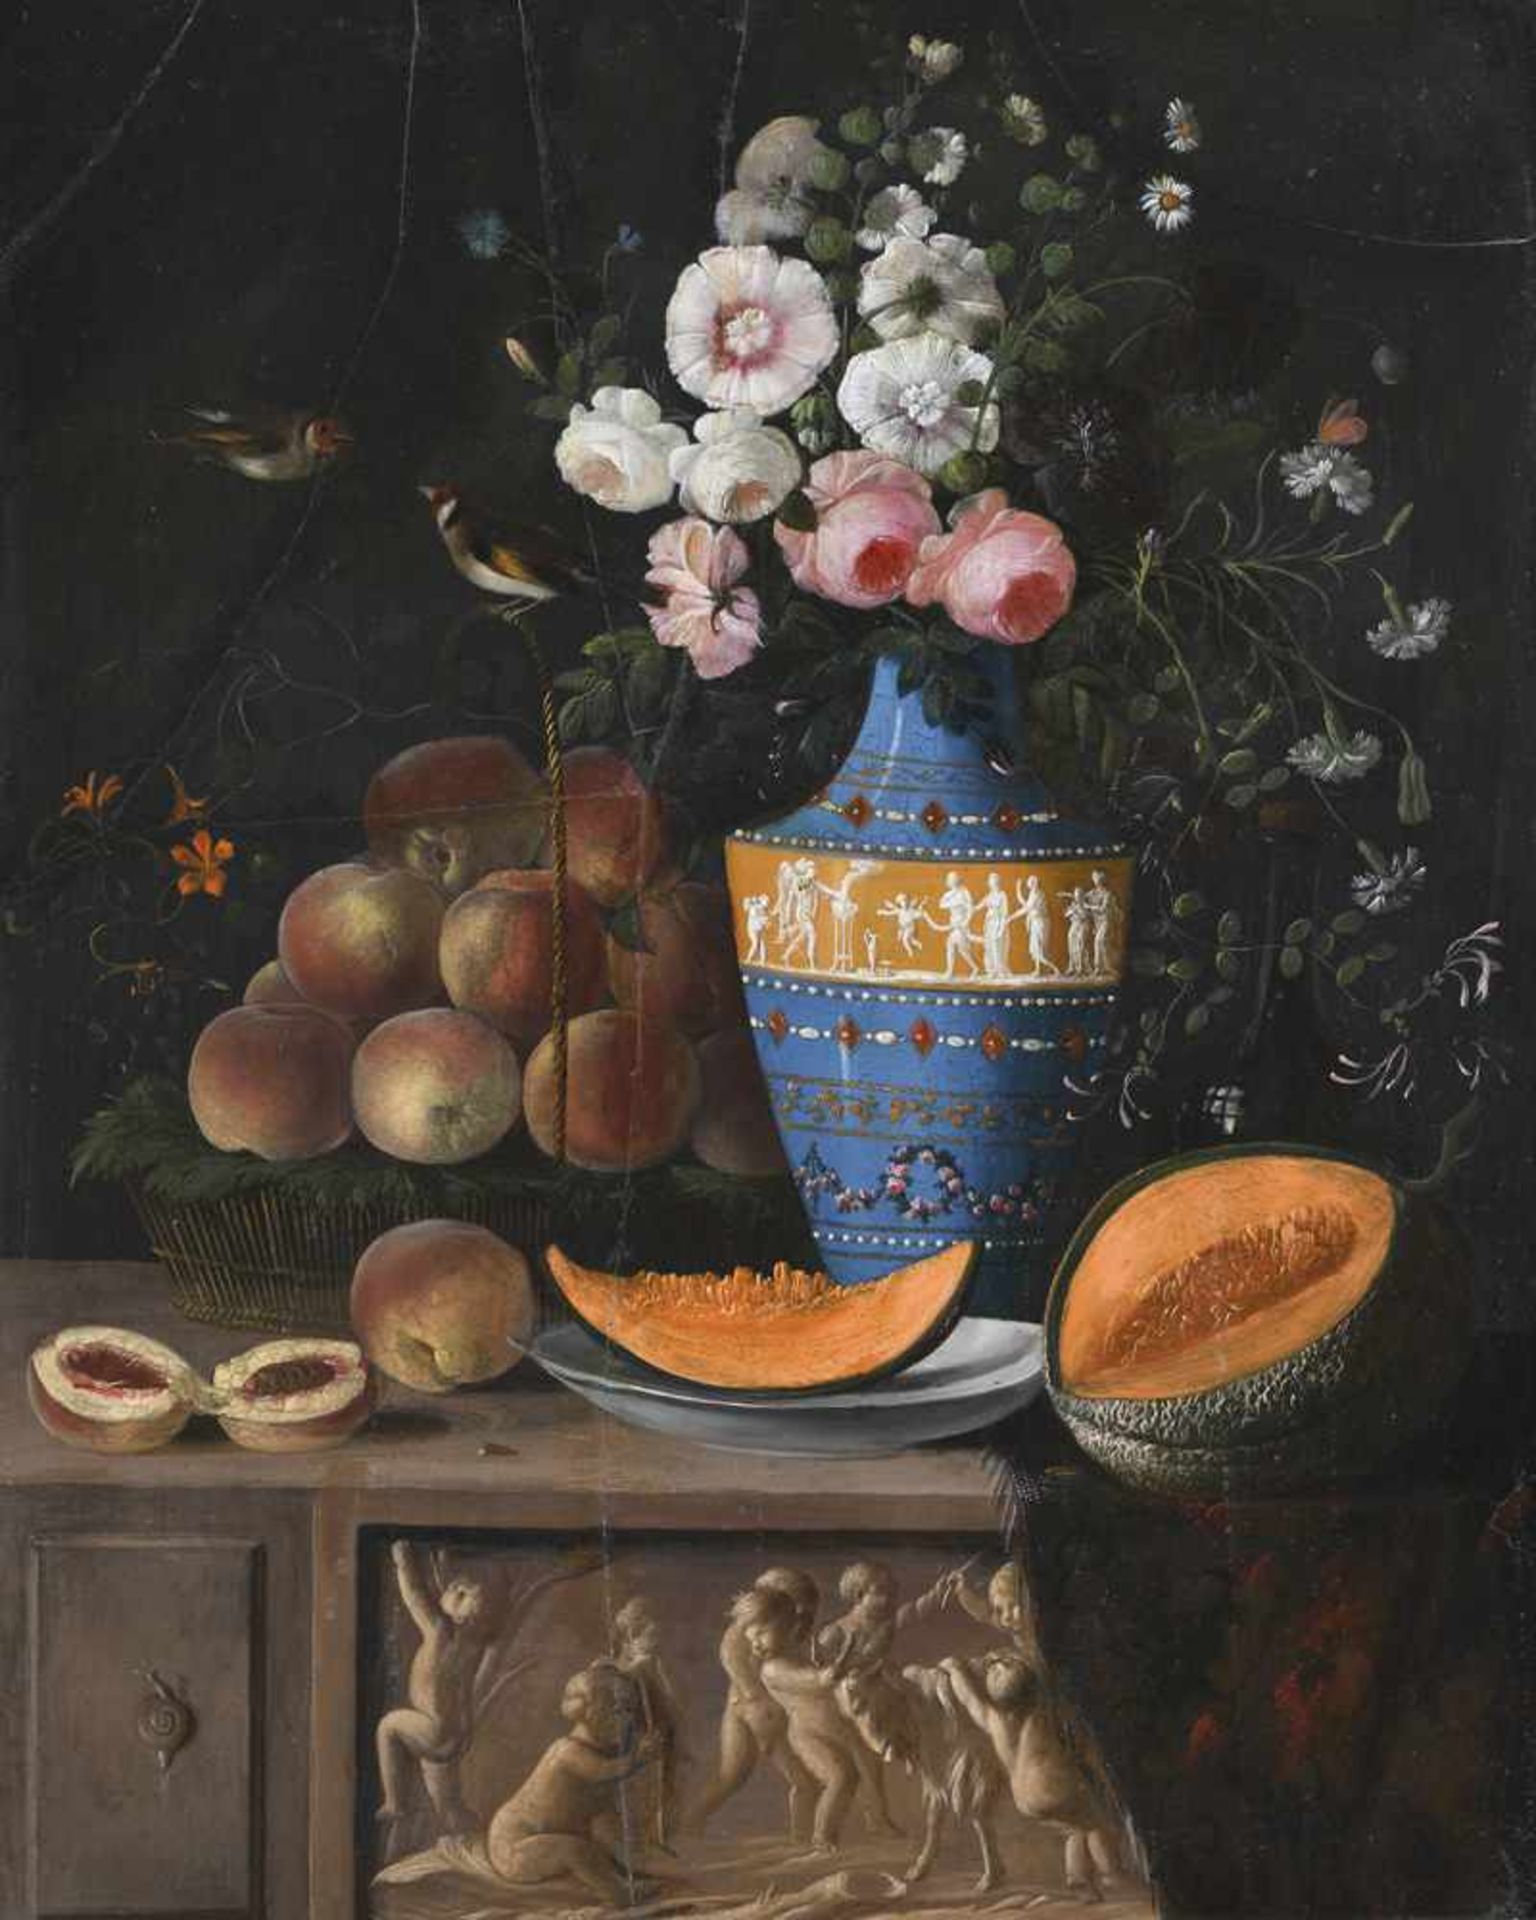 Österreich19. Jahrhundert63 x 48 cmStilleben mit Pfirsichen und Melonen sowie einem Rosenstrauß in